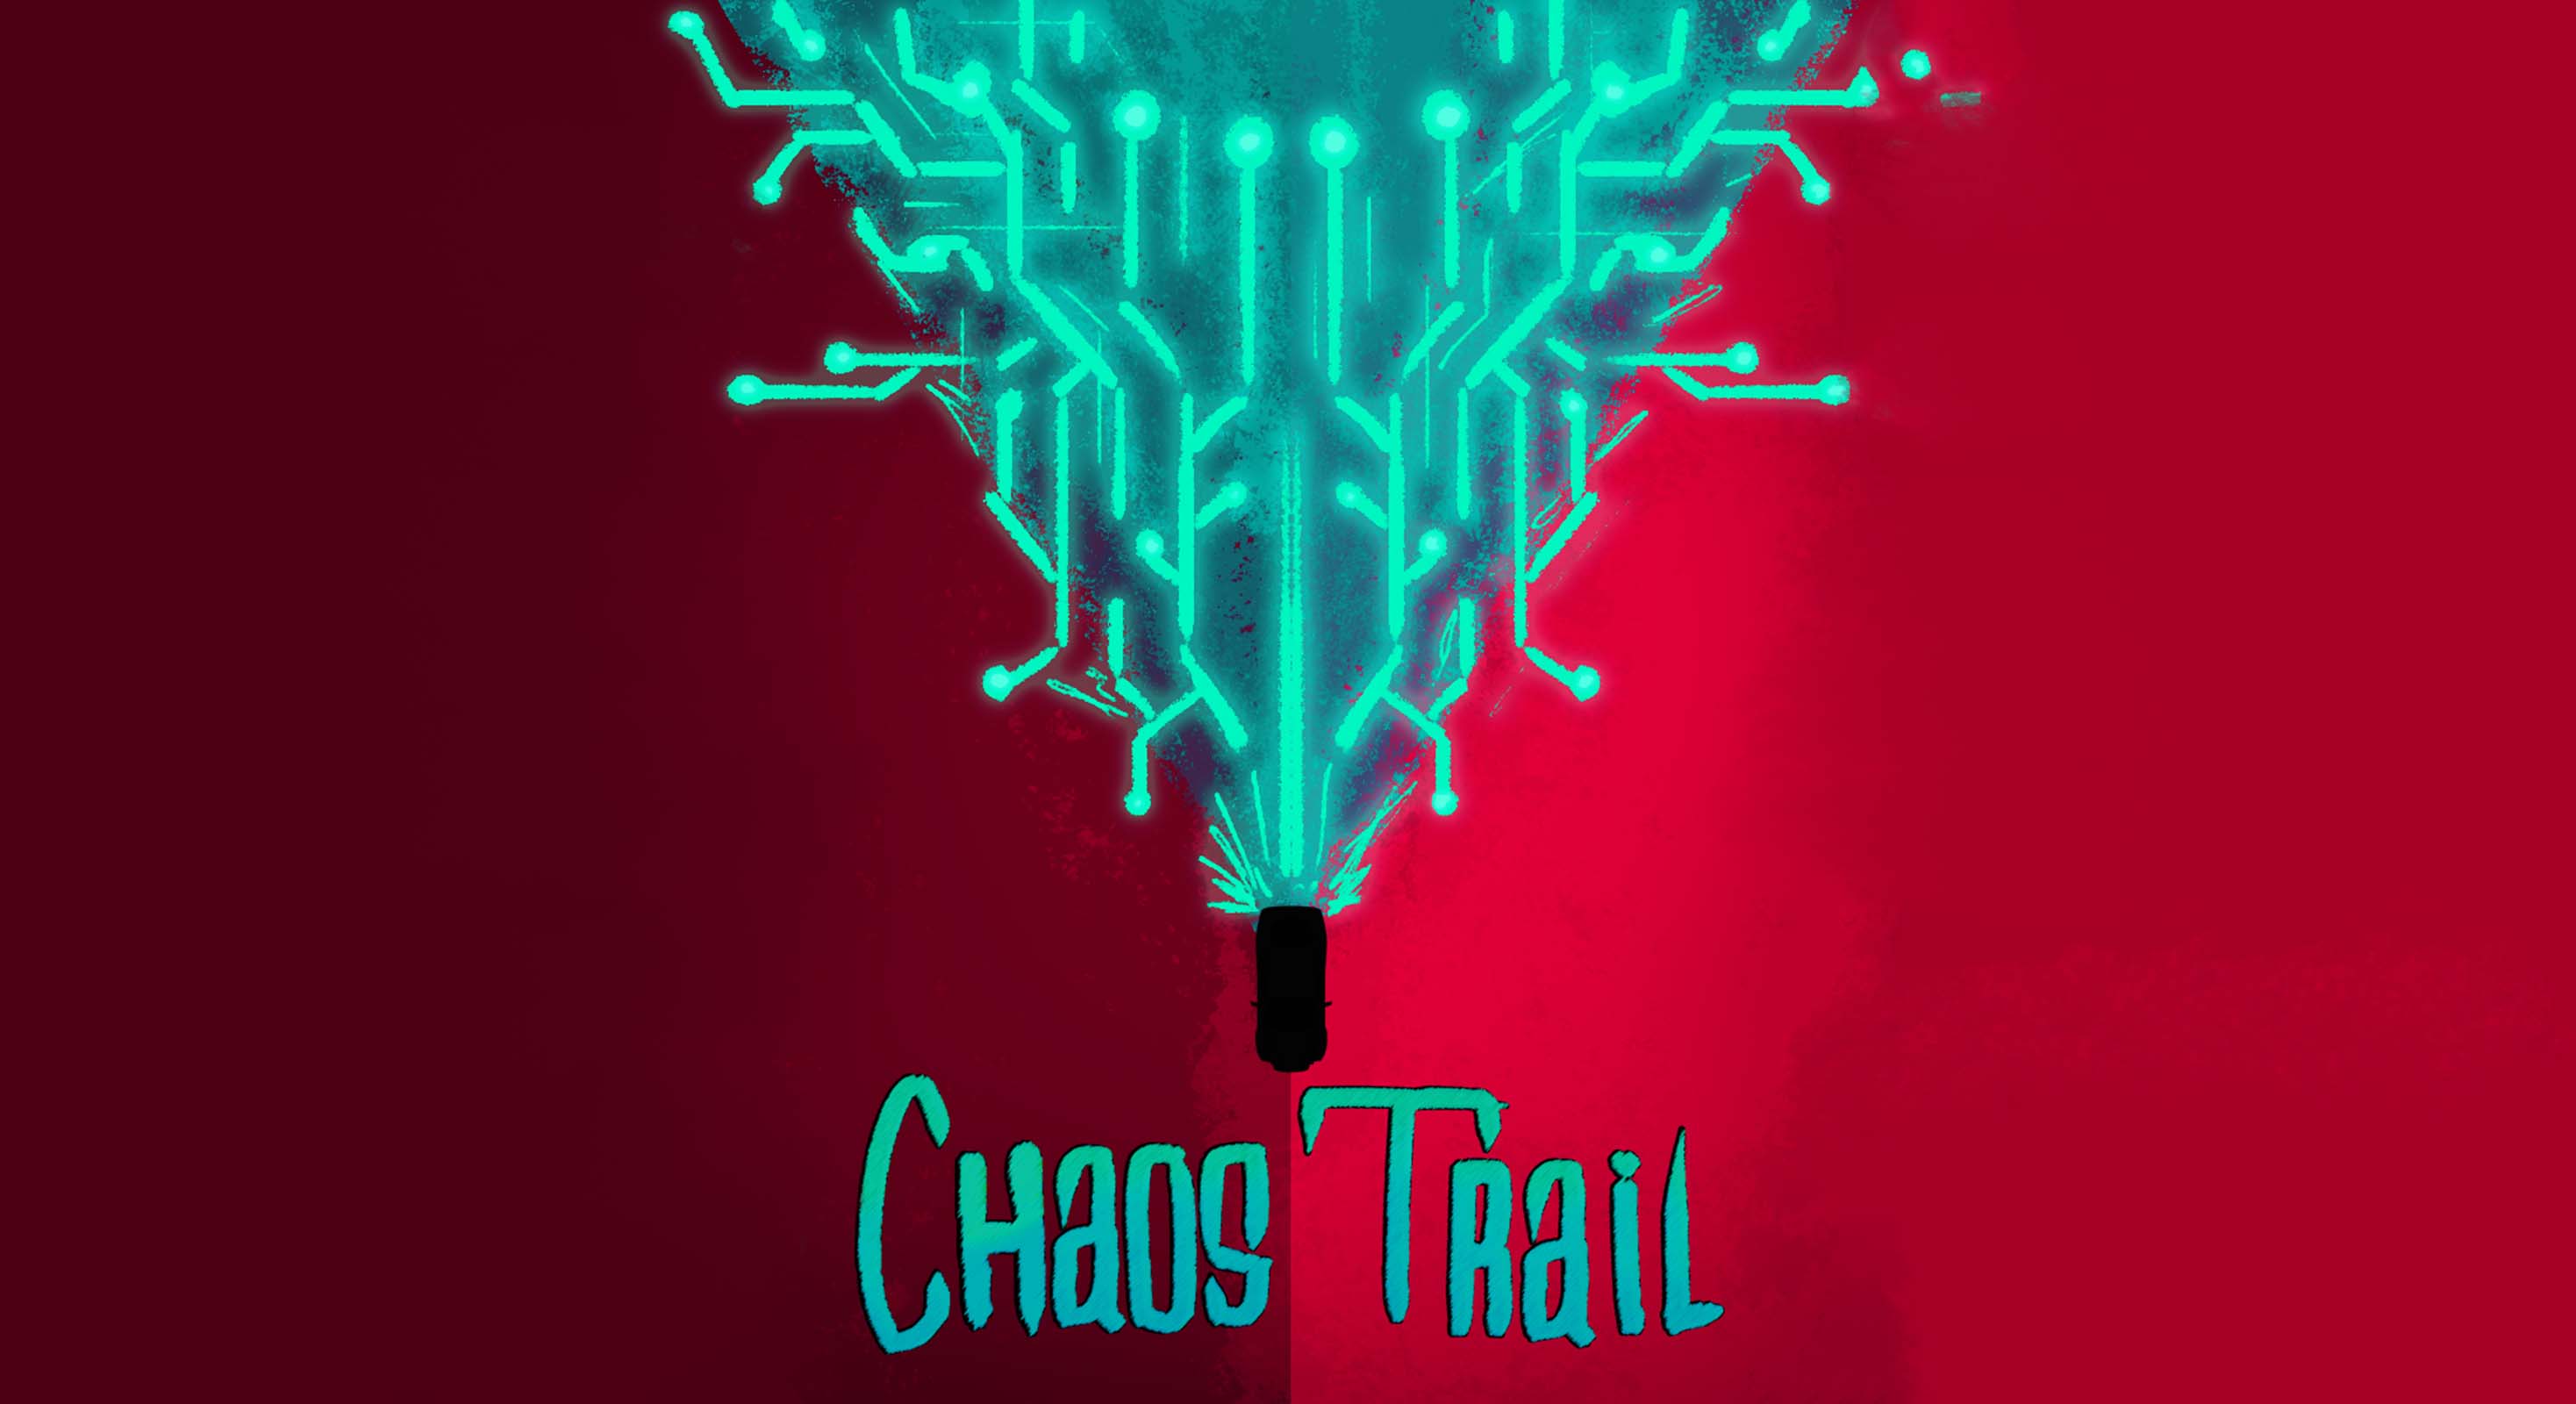 Chaos Trail